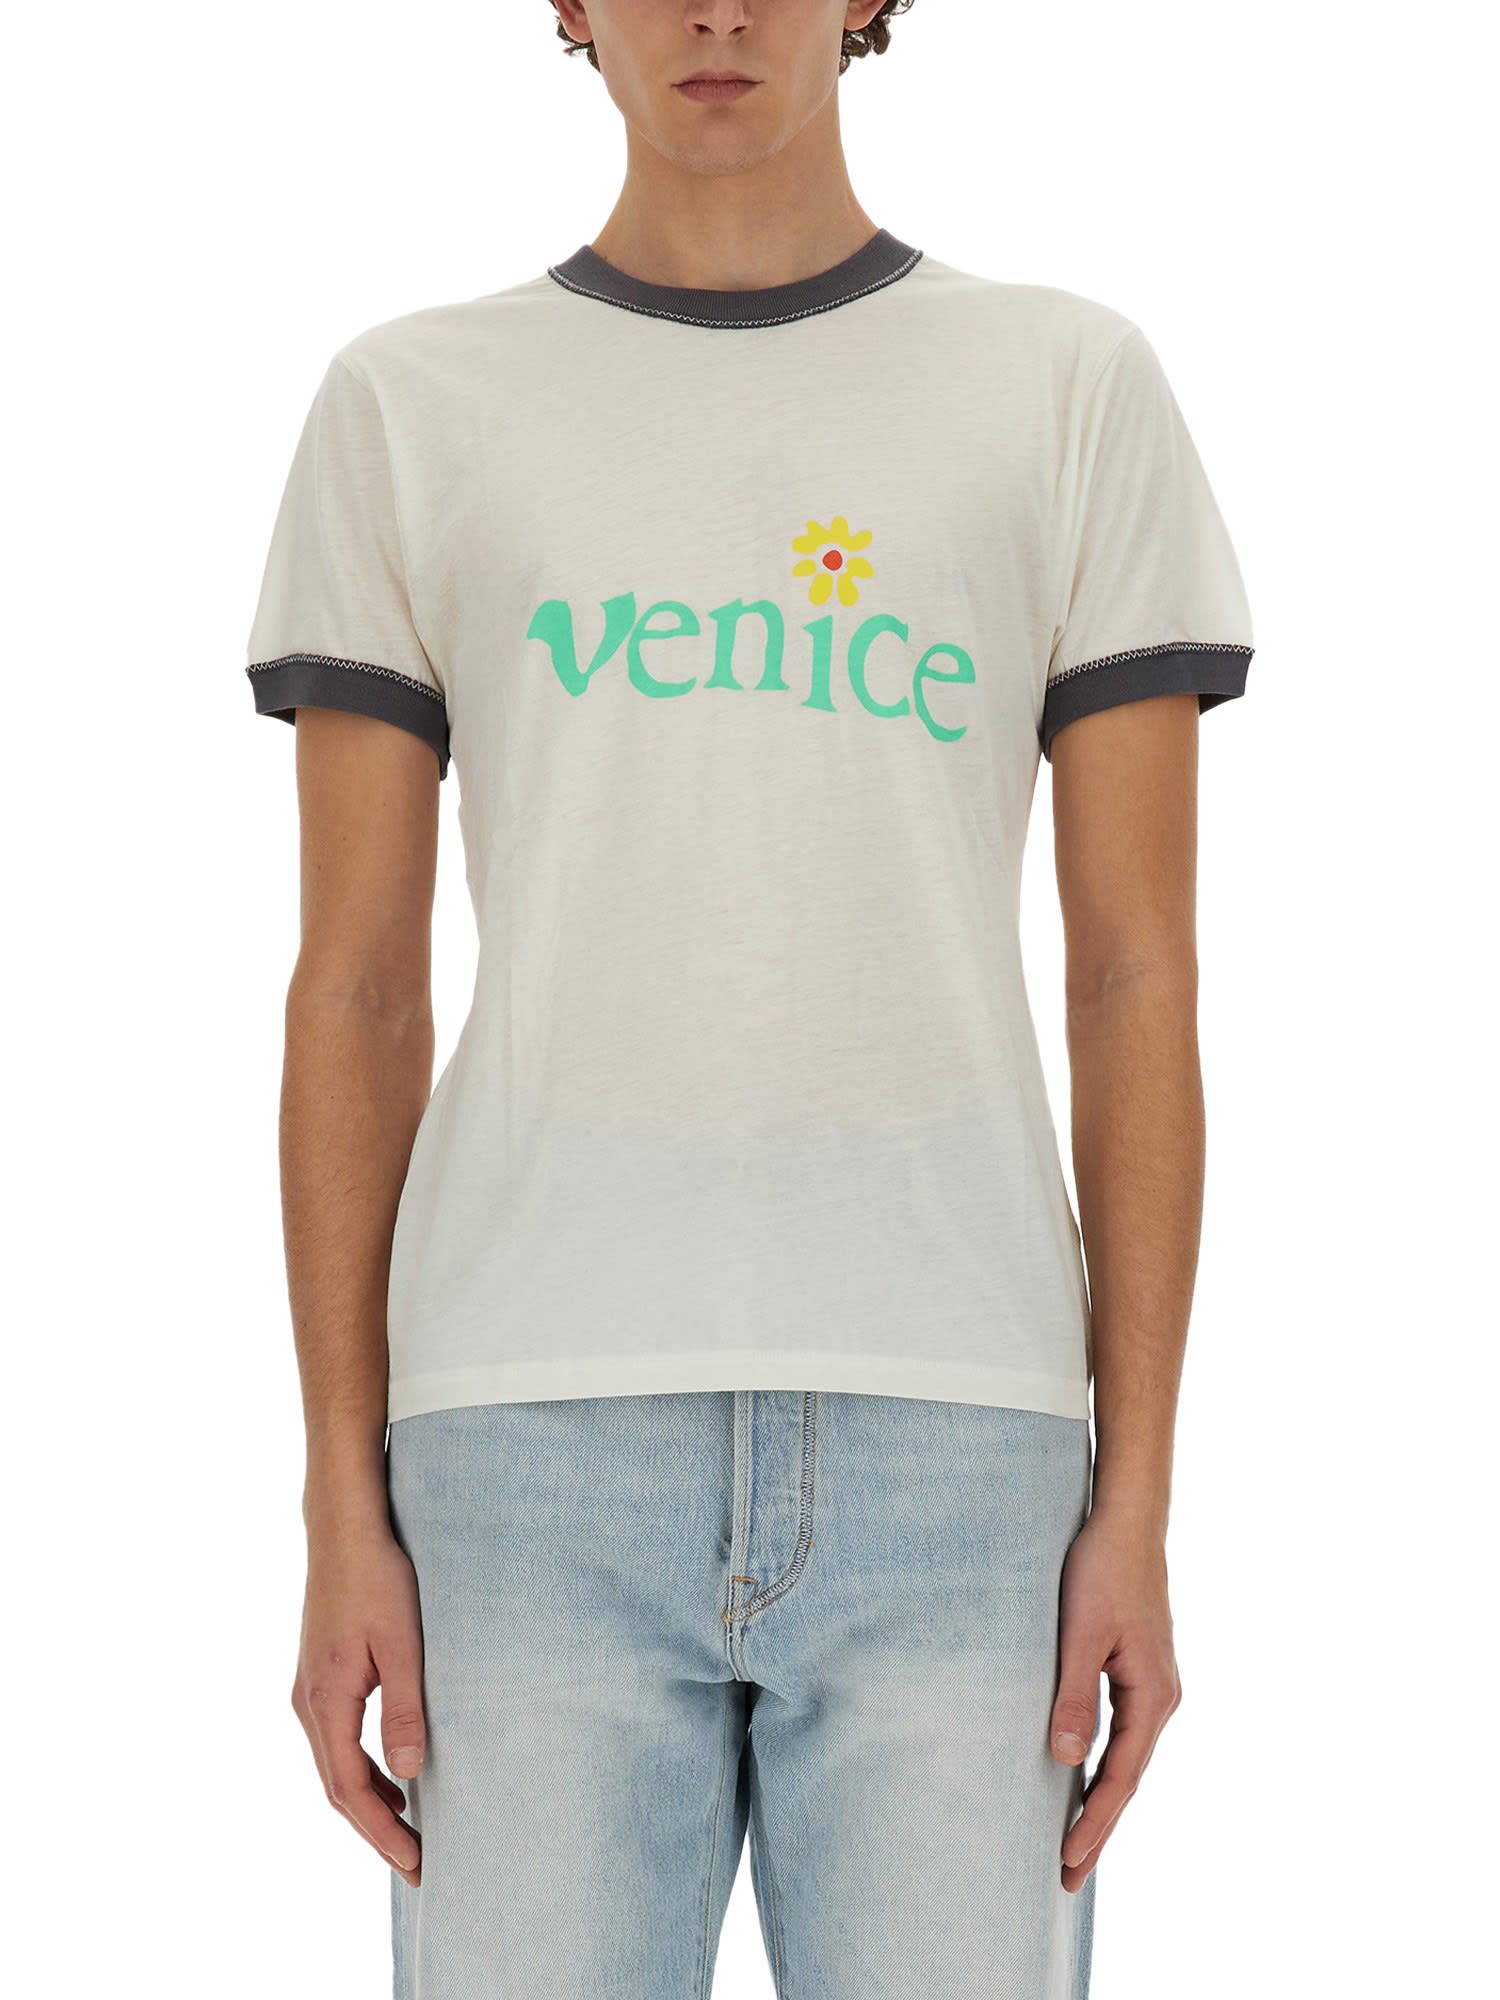 T-shirt venice